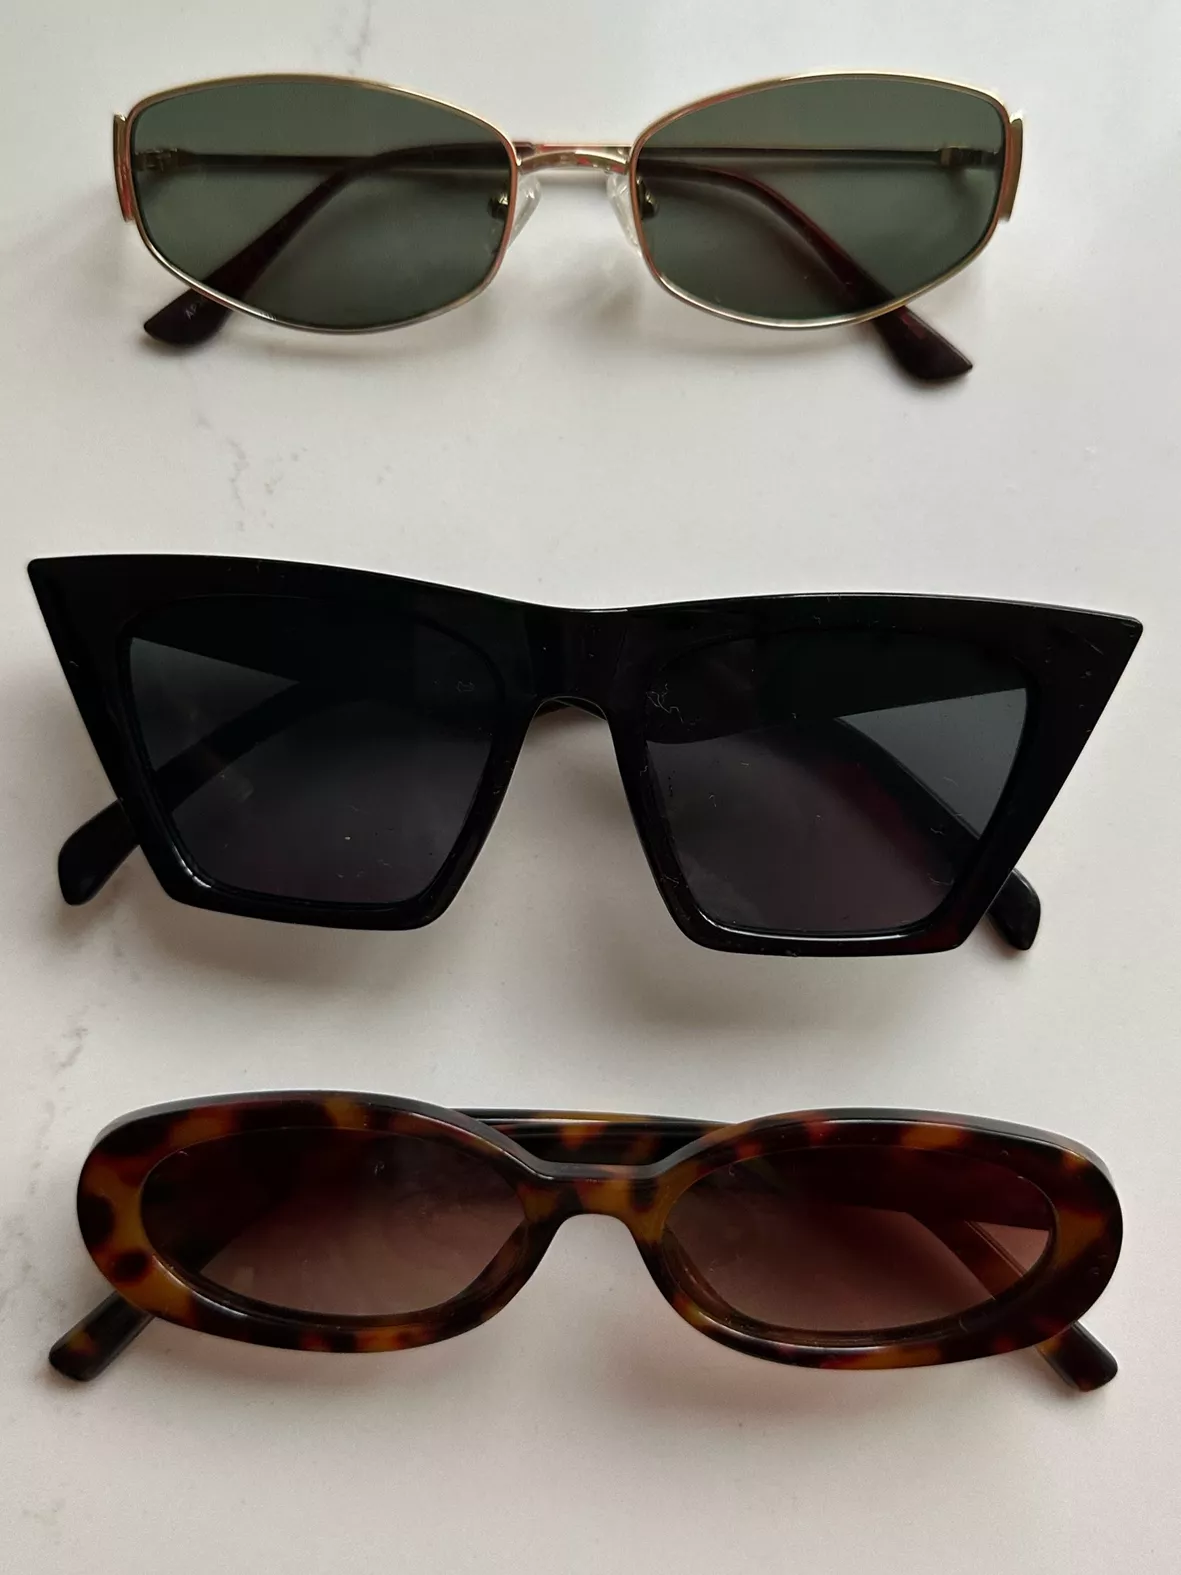 Appassal Retro Oval Sunglasses For Women Men Hexagonal Rectangle Metal  Frame Sun Glasses AP3625